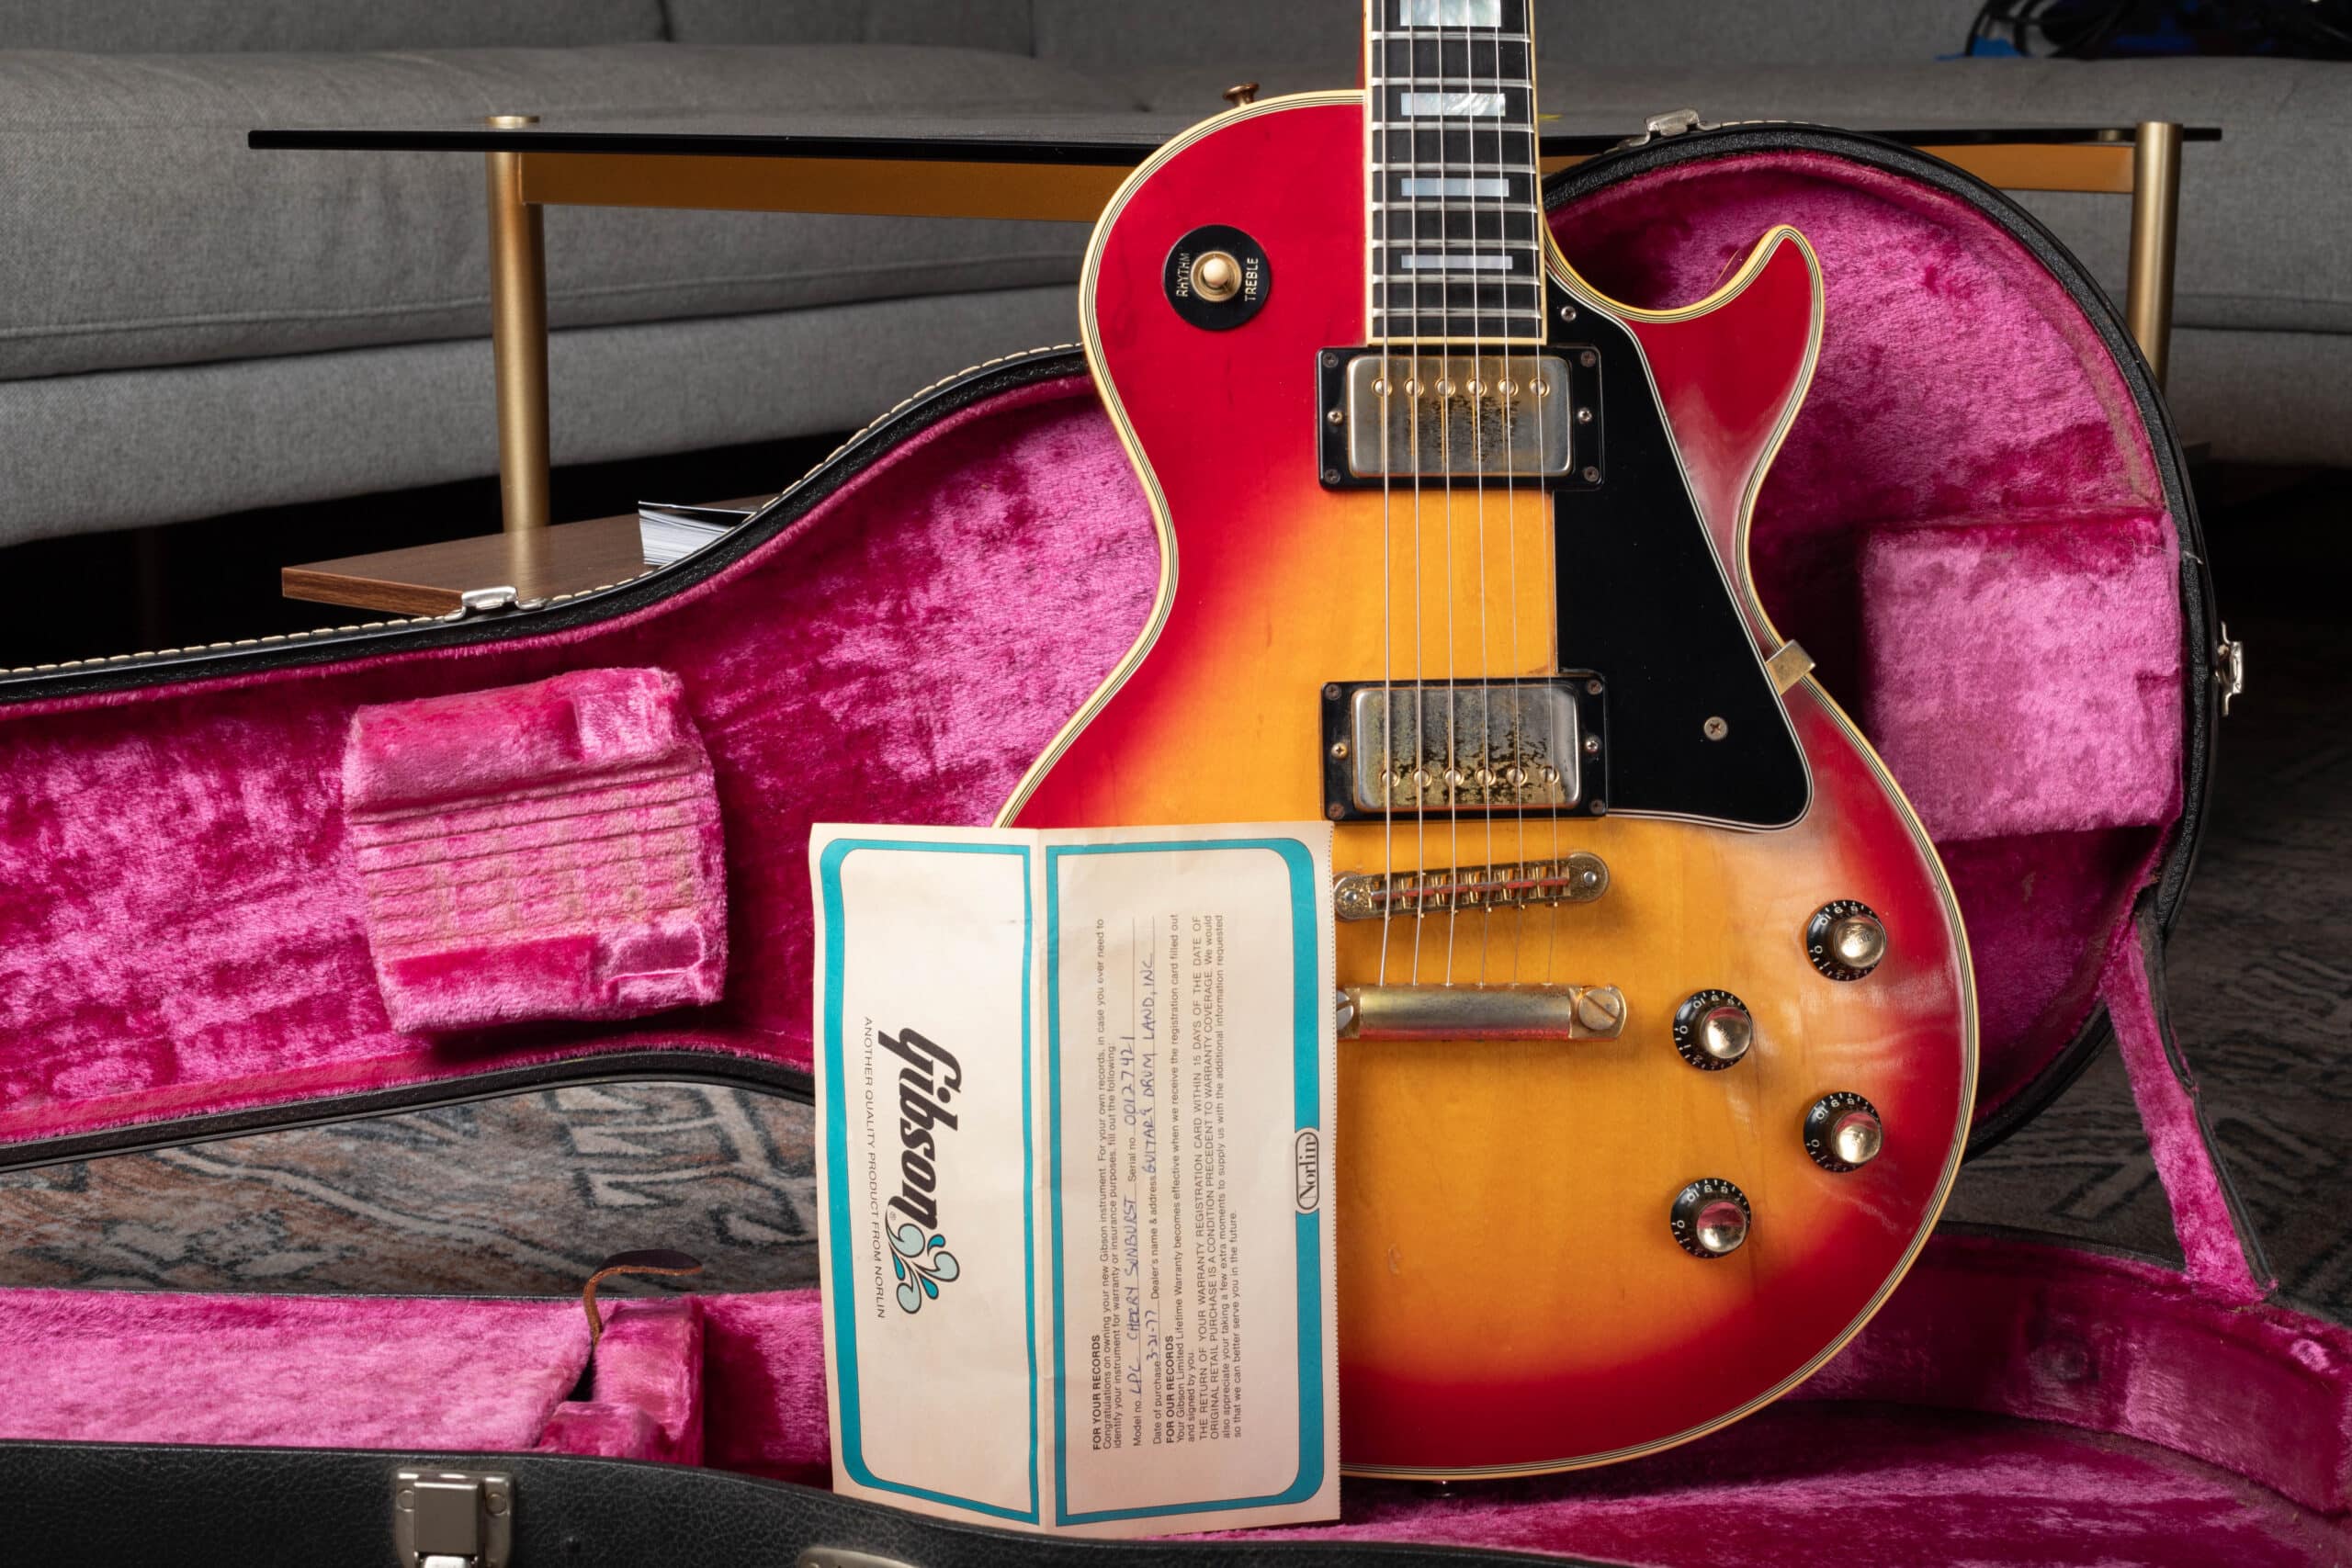 A 1976 Gibson Les Paul Custom with warranty card